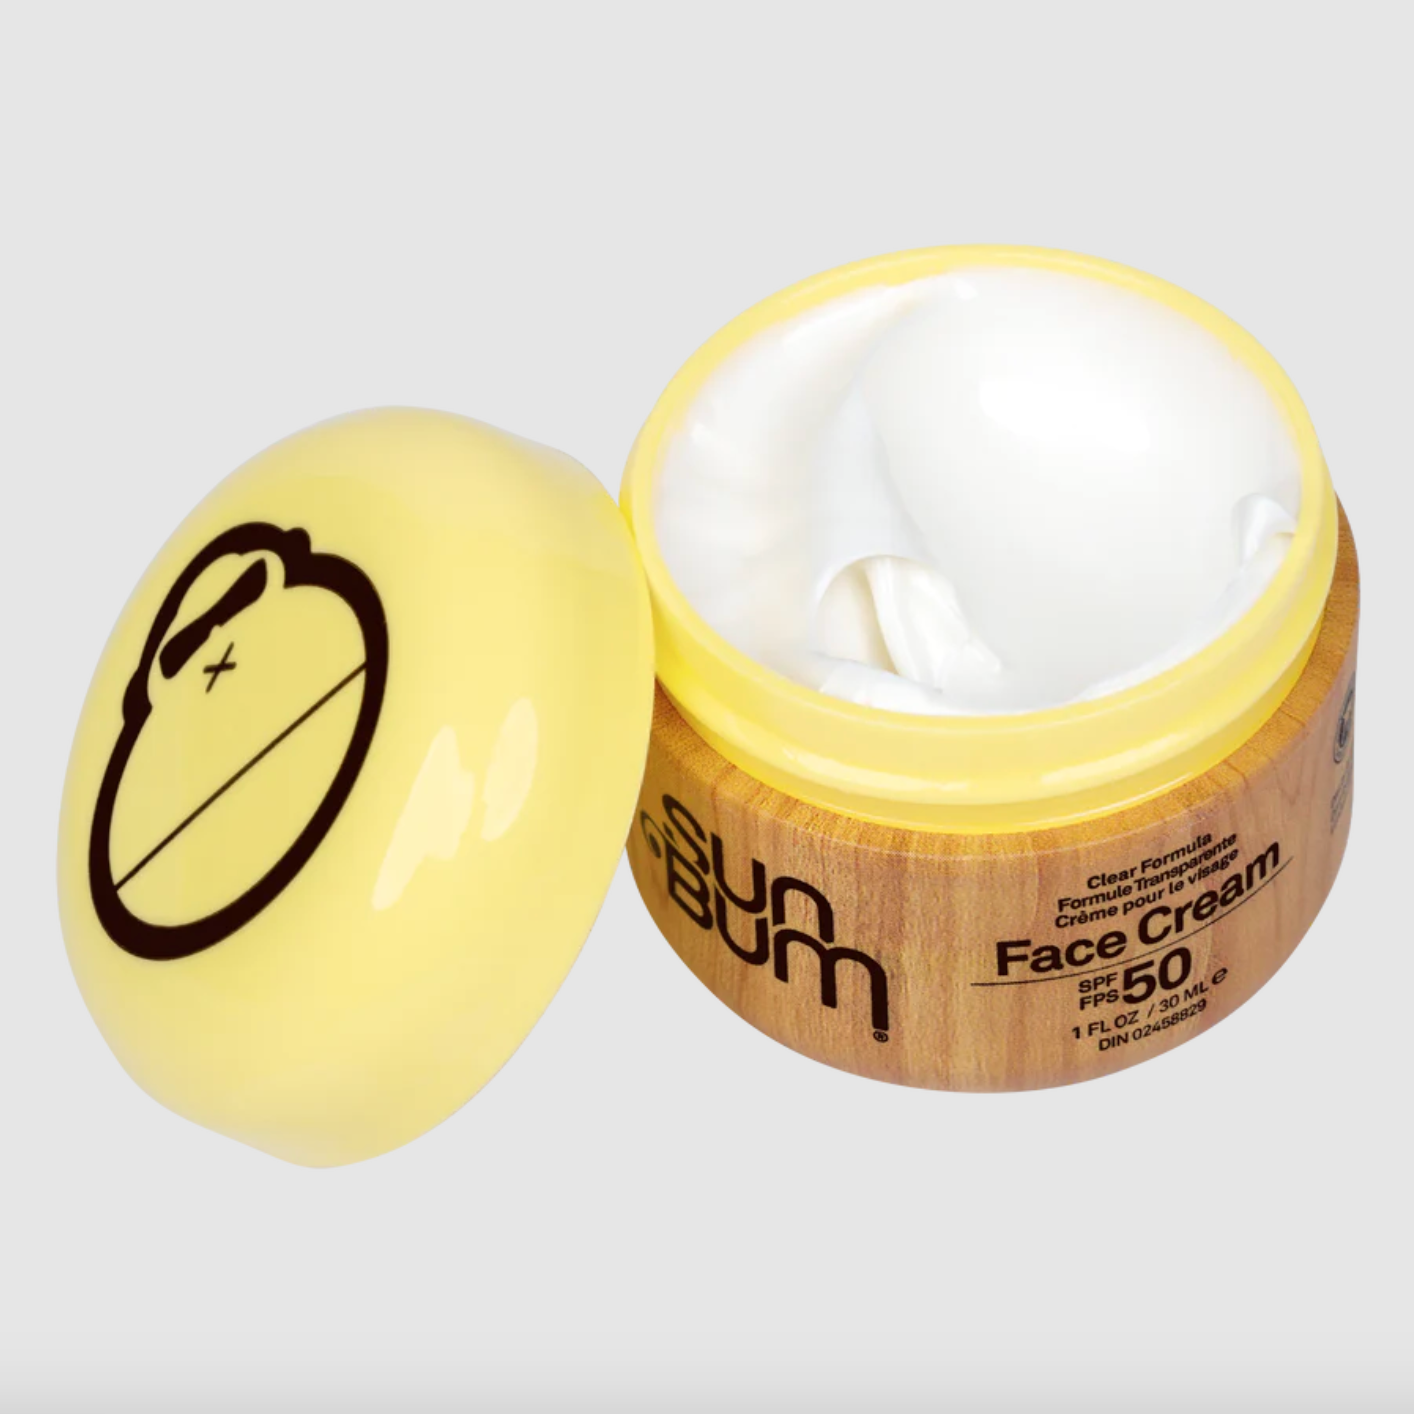 Sun Bum Original Face Cream SPF 50